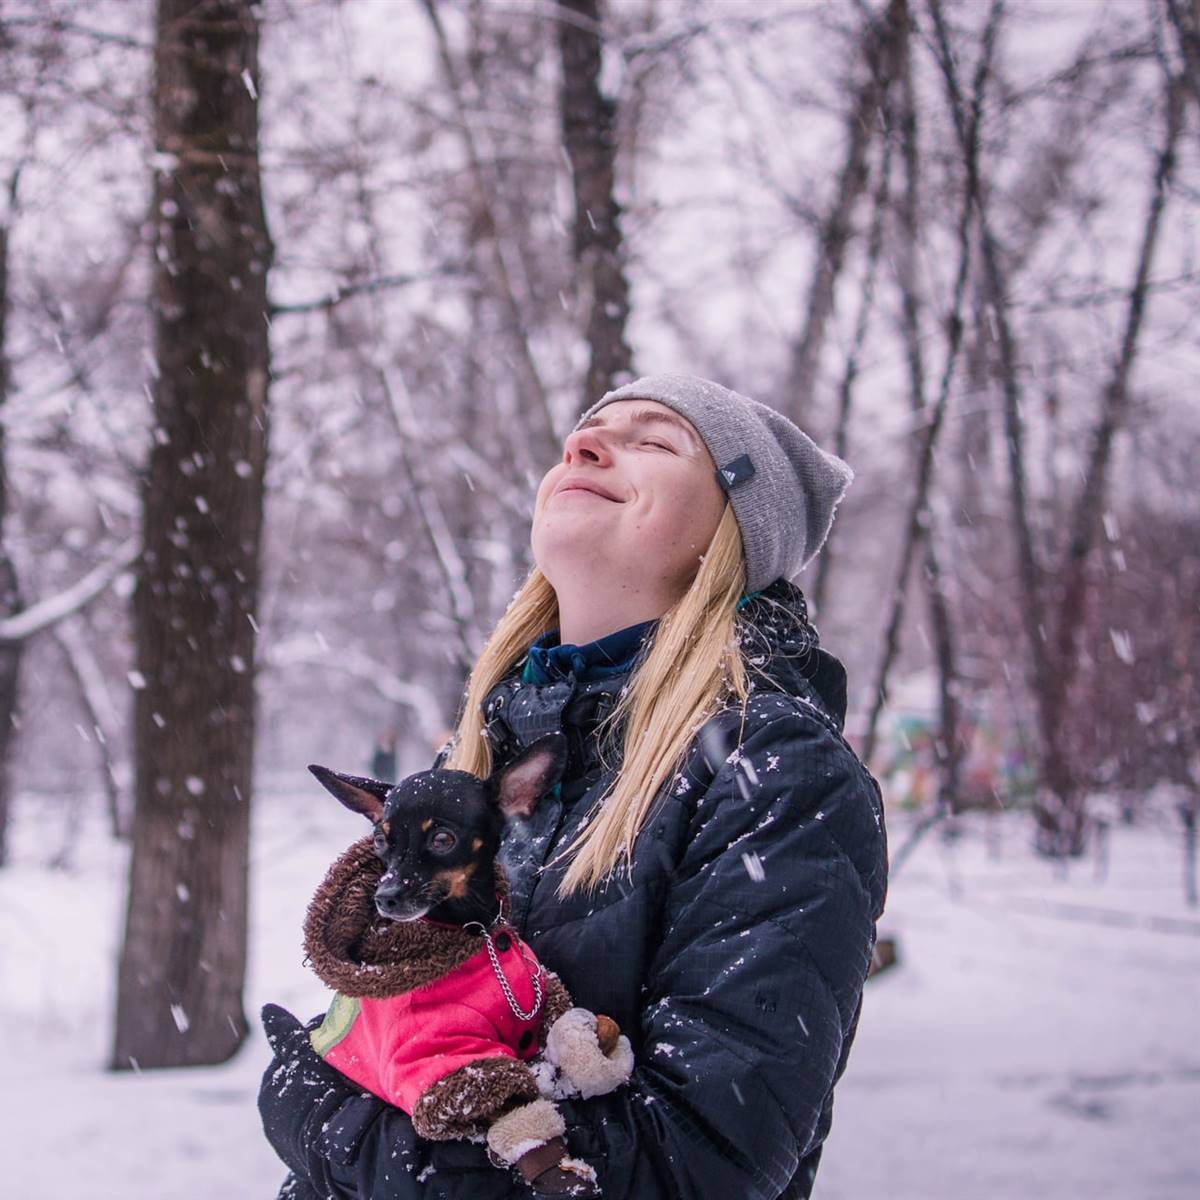 Mujer en la nieve con perro